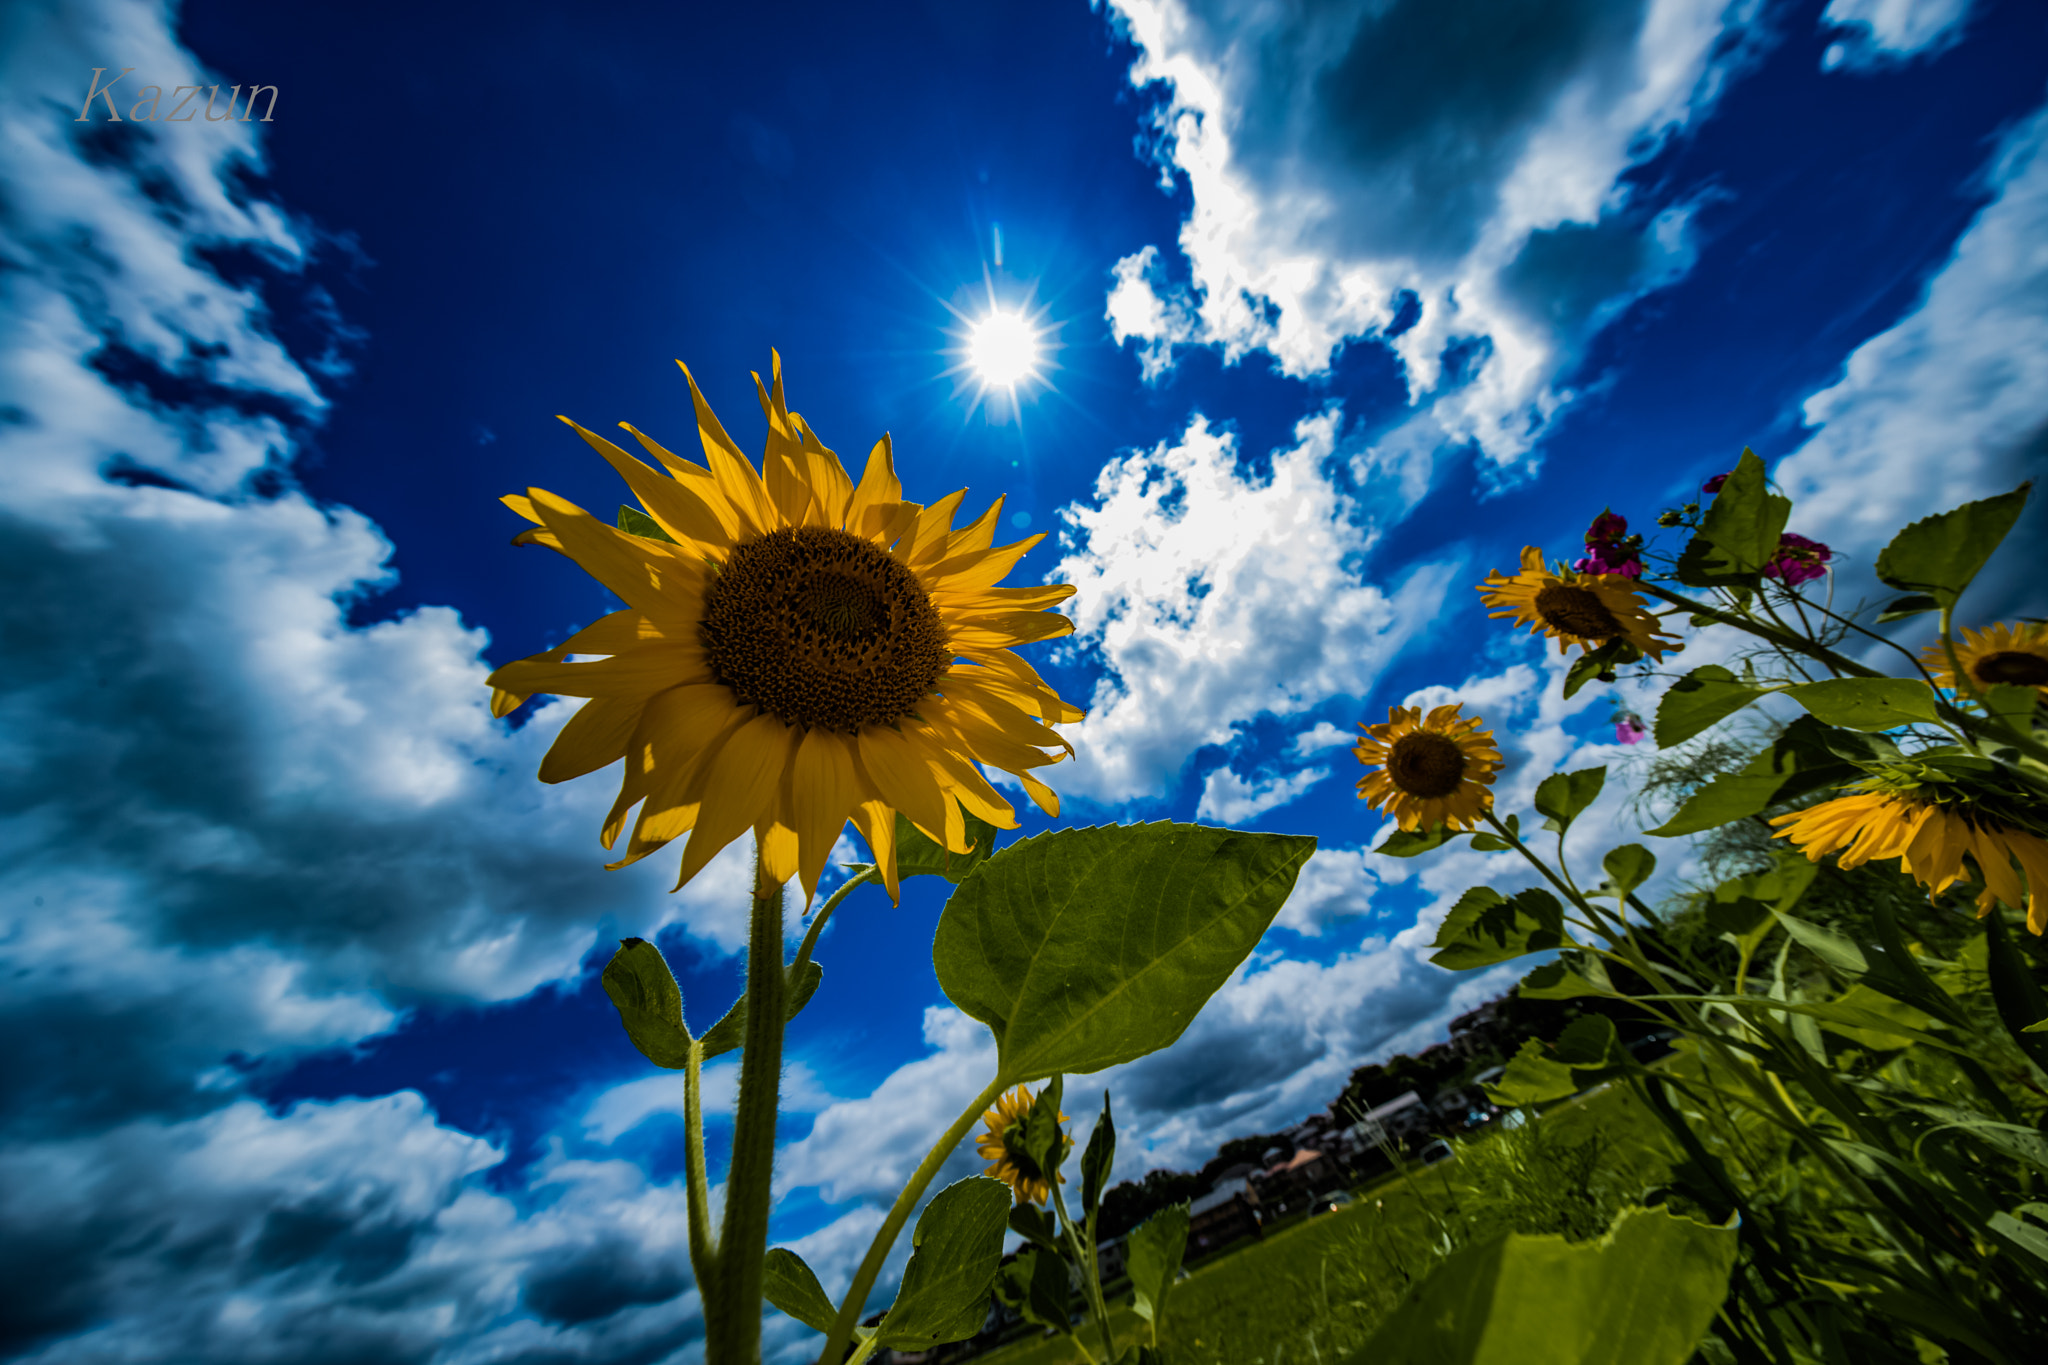 Canon EOS-1D X Mark II sample photo. Sunflower+sun!= my power! photography